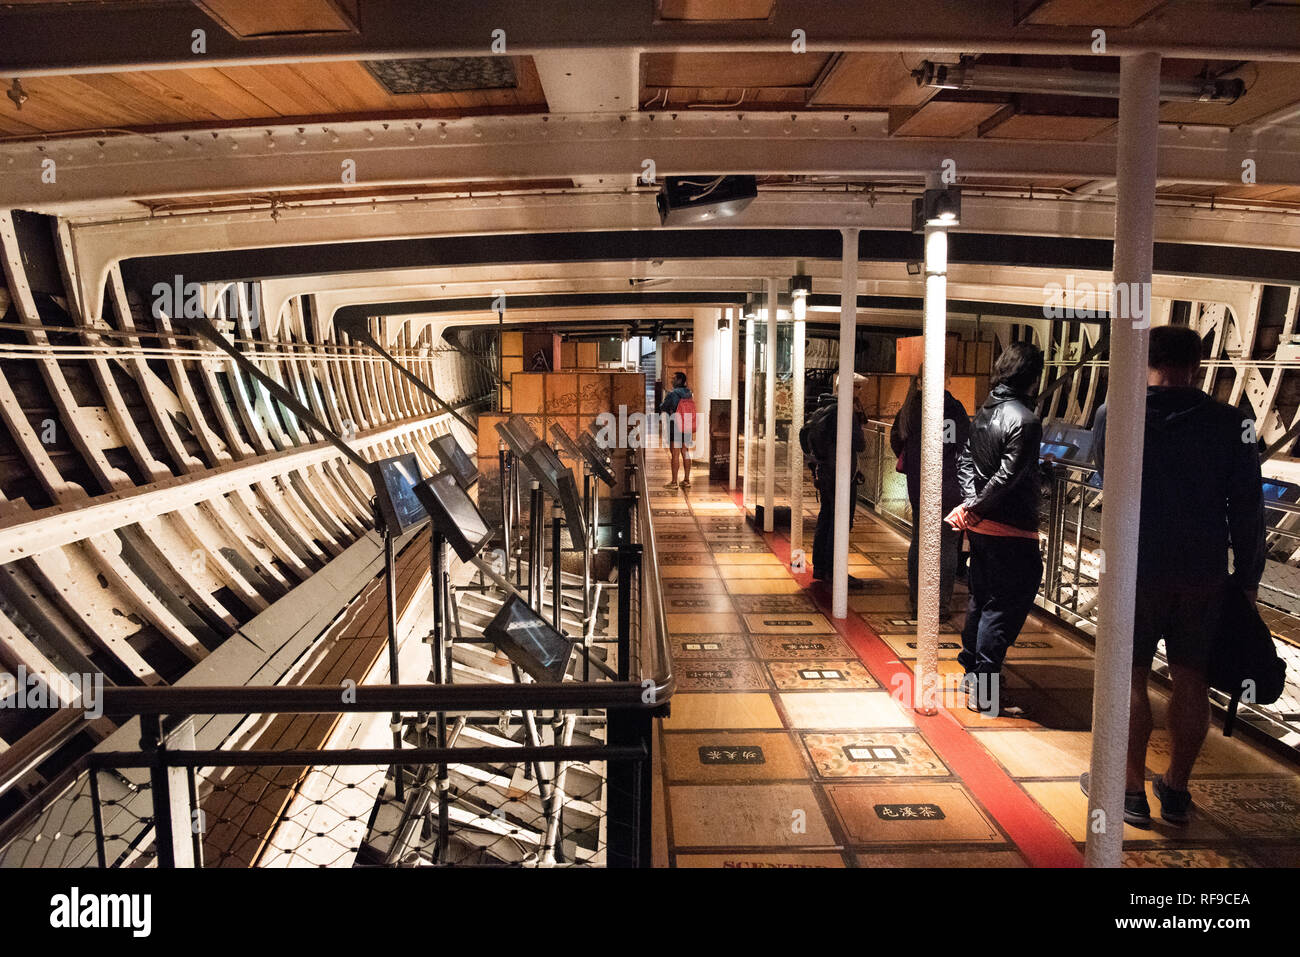 GREENWICH, ENGLAND - Die Cutty Sark ist ein restauriertes historisches Britischen clipper segeln Schiff, das jetzt geöffnet wird als touristische Attraktion in Greenwich, London. Es war im Jahre 1869 und im aktiven Dienst bis 1895 gebaut. In seiner Blütezeit als Händler Schiff, es war, als das schnellste Schiff seiner Zeit bekannt. Es war bemerkenswert, für seine Teilnahme an der Tee Handel zwischen Asien und Europa. Wenn die Eröffnung des Suezkanals erstellt die Möglichkeit, für kürzere und schnellere Fahrten mit Dampf Schiffen, die Cutty Sark wurde verwendet, Wolle aus Australien nach Großbritannien zu transportieren. Stockfoto